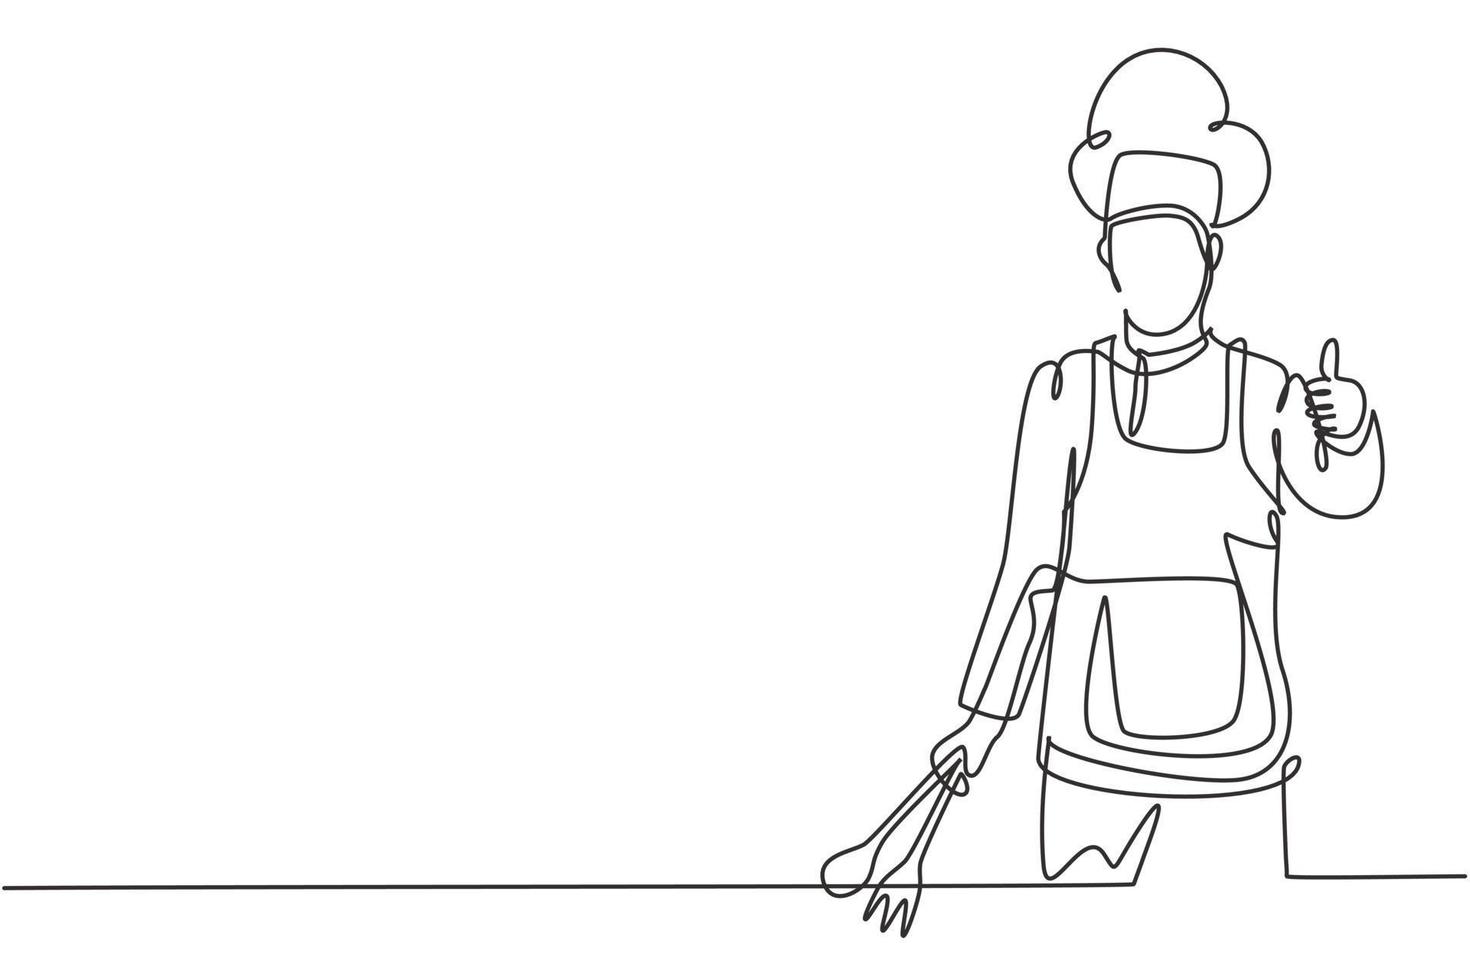 Un solo dibujo de una línea del chef con gestos de pulgar hacia arriba y uniformes está listo para cocinar comidas para los huéspedes en restaurantes famosos. Ilustración de vector gráfico de diseño de dibujo de línea continua moderna.